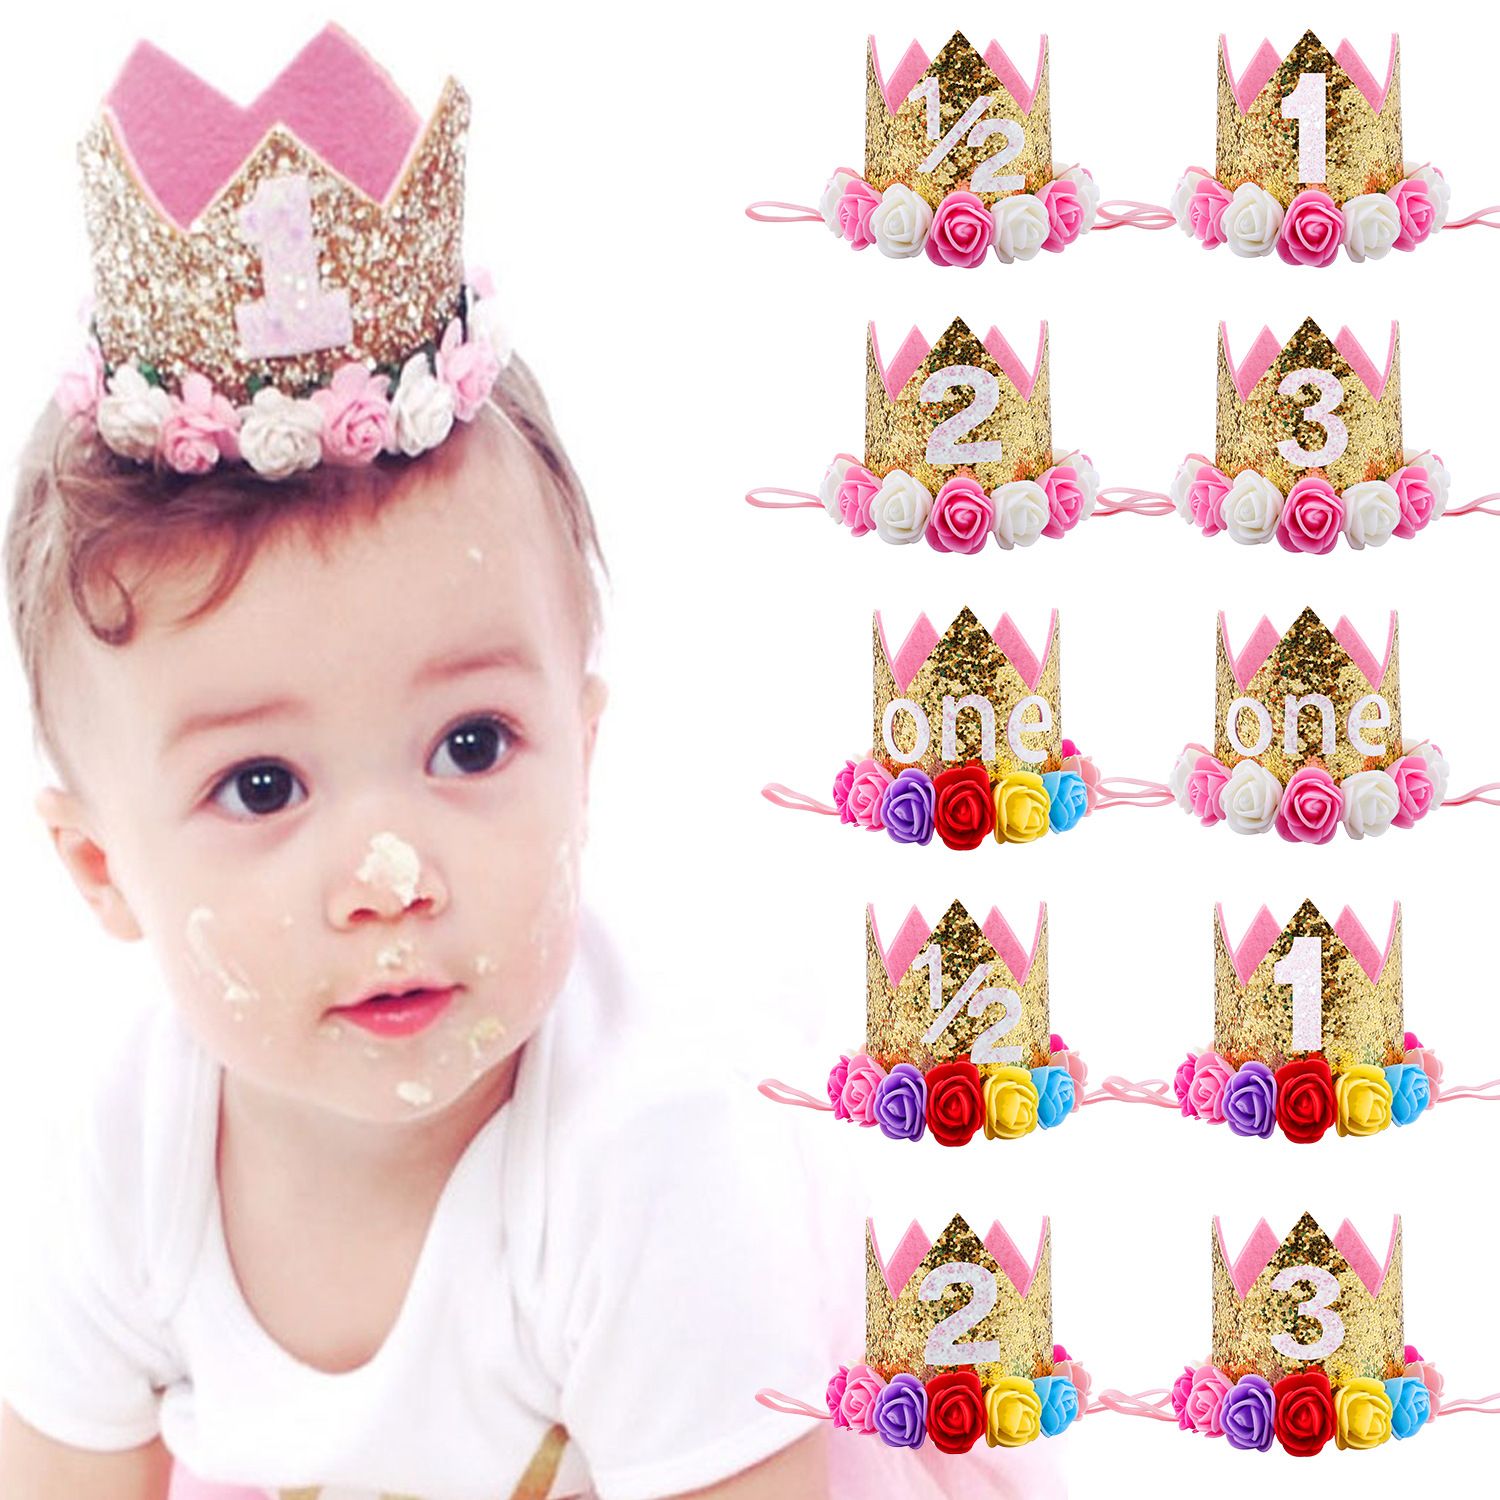 Baby meisjes bloem kroon hoofdbanden verjaardagsfeestje tiara haarbanden kinderen prinses haaraccessoires glitter fonkeling schattige hoofdband voor peuter kha530